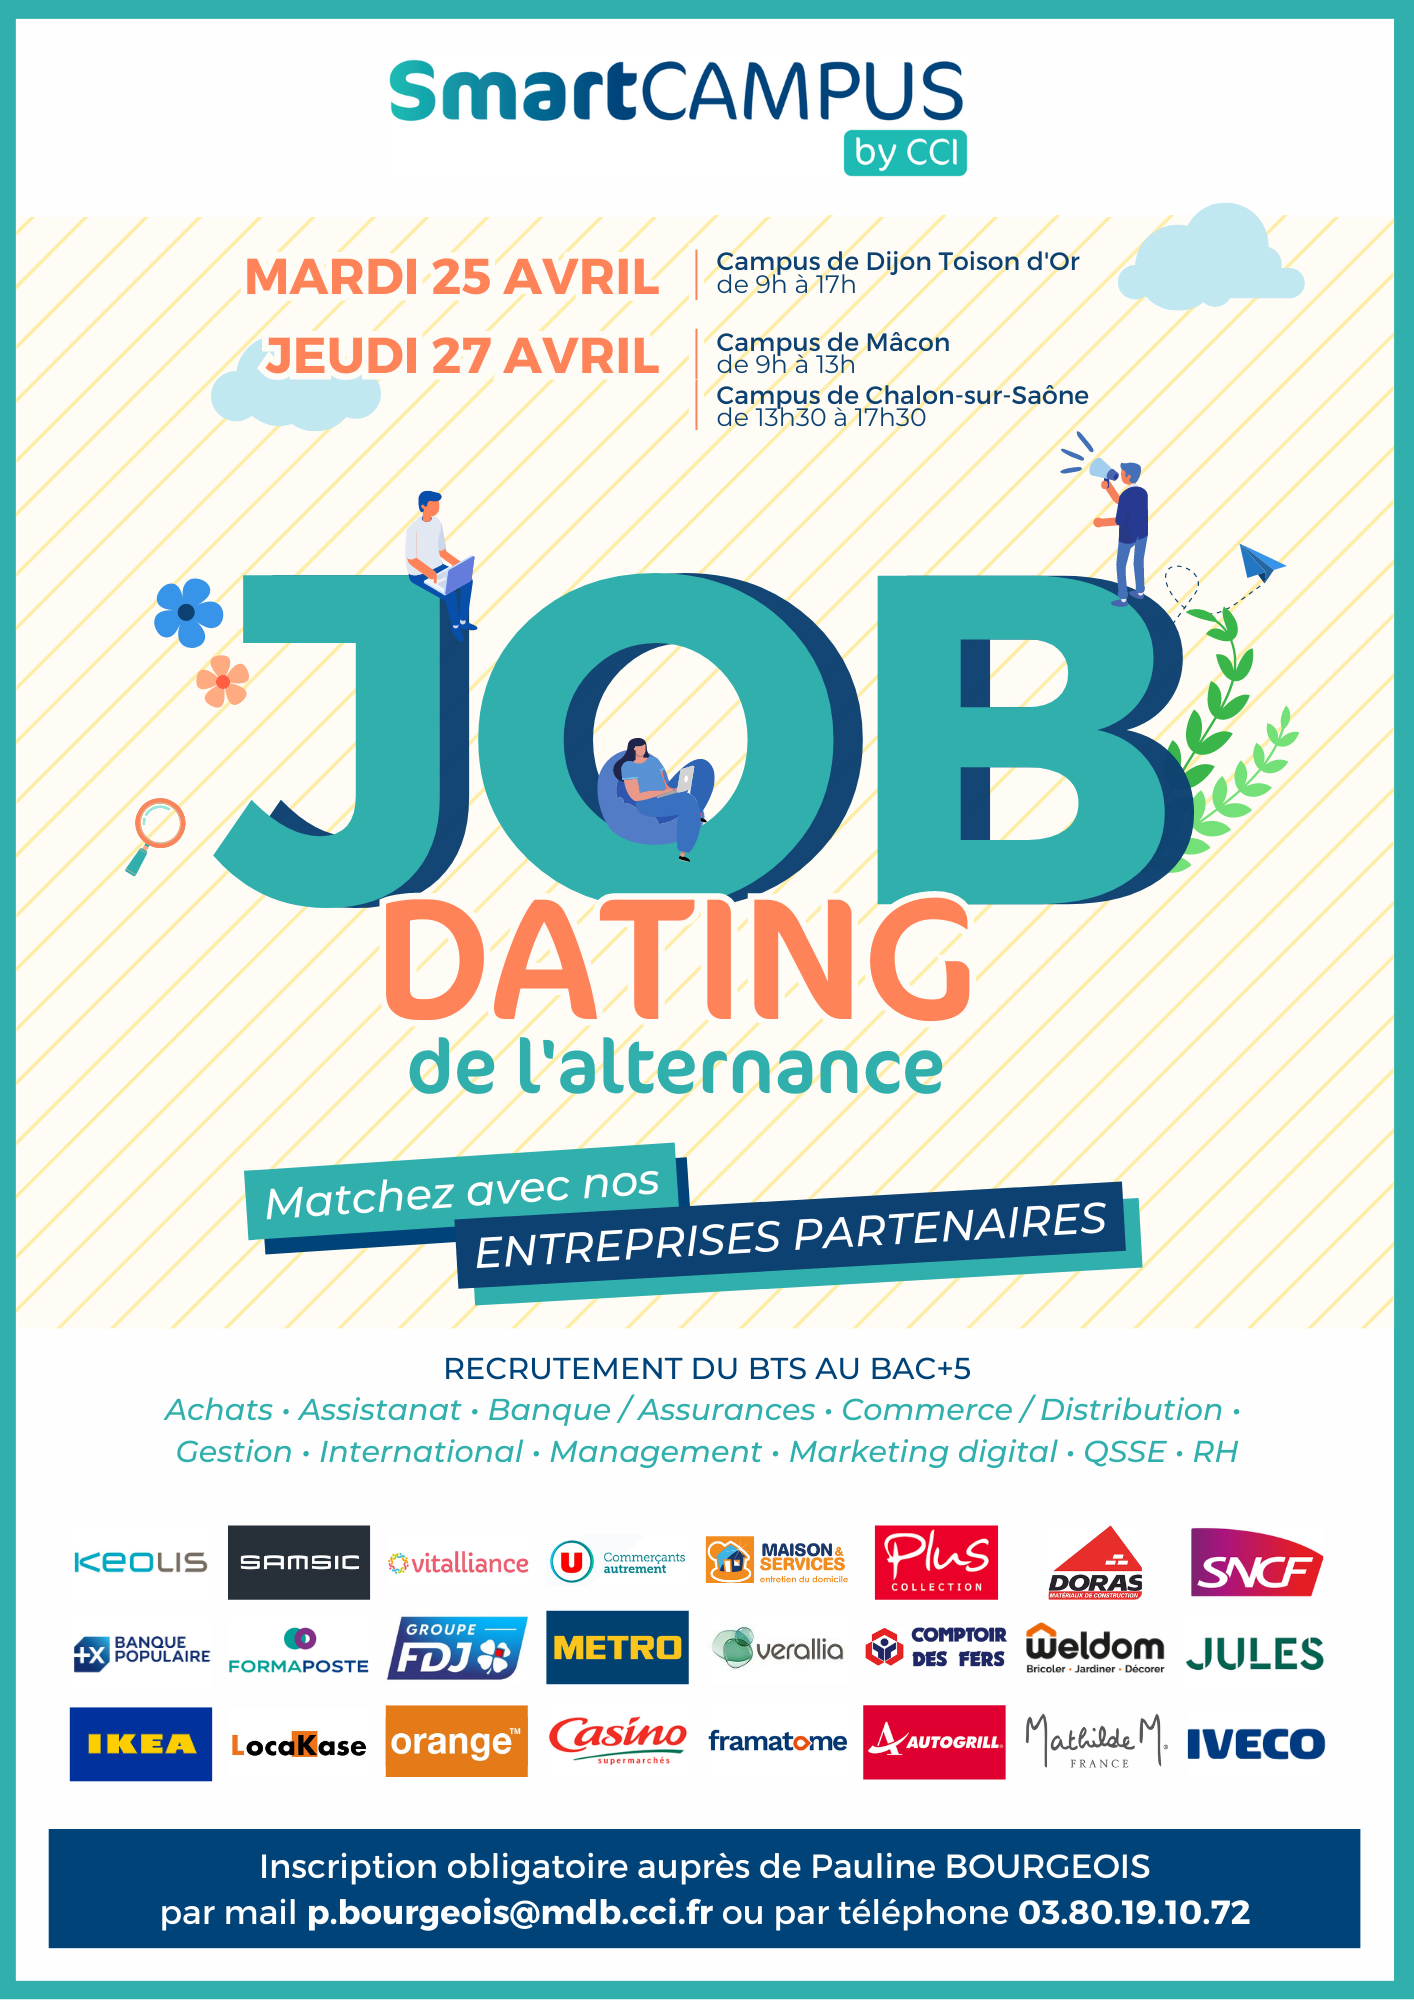 Job Dating de l'alternance - SmartCAMPUS by CCI - Dijon, Chalon et Mâcon